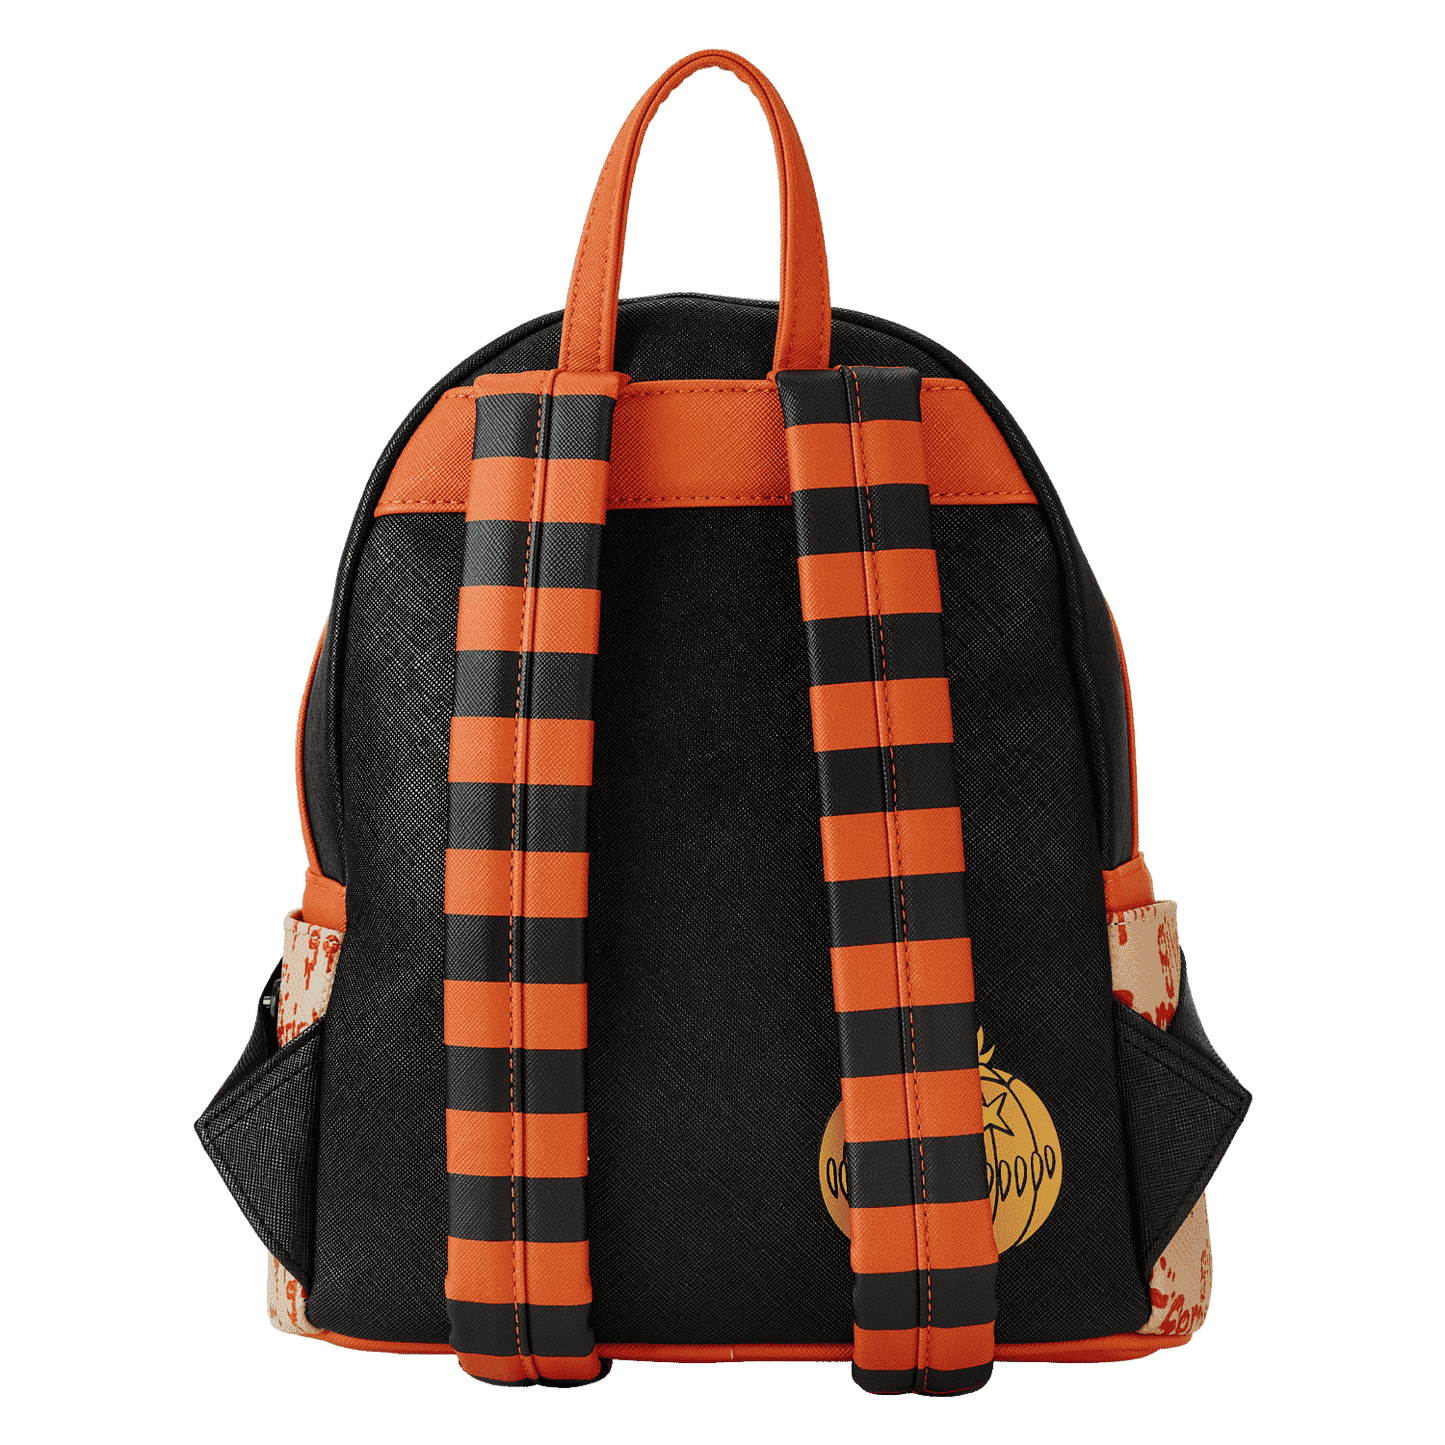 LF Trick R Treat Pumpkin Cosplay Mini Backpack